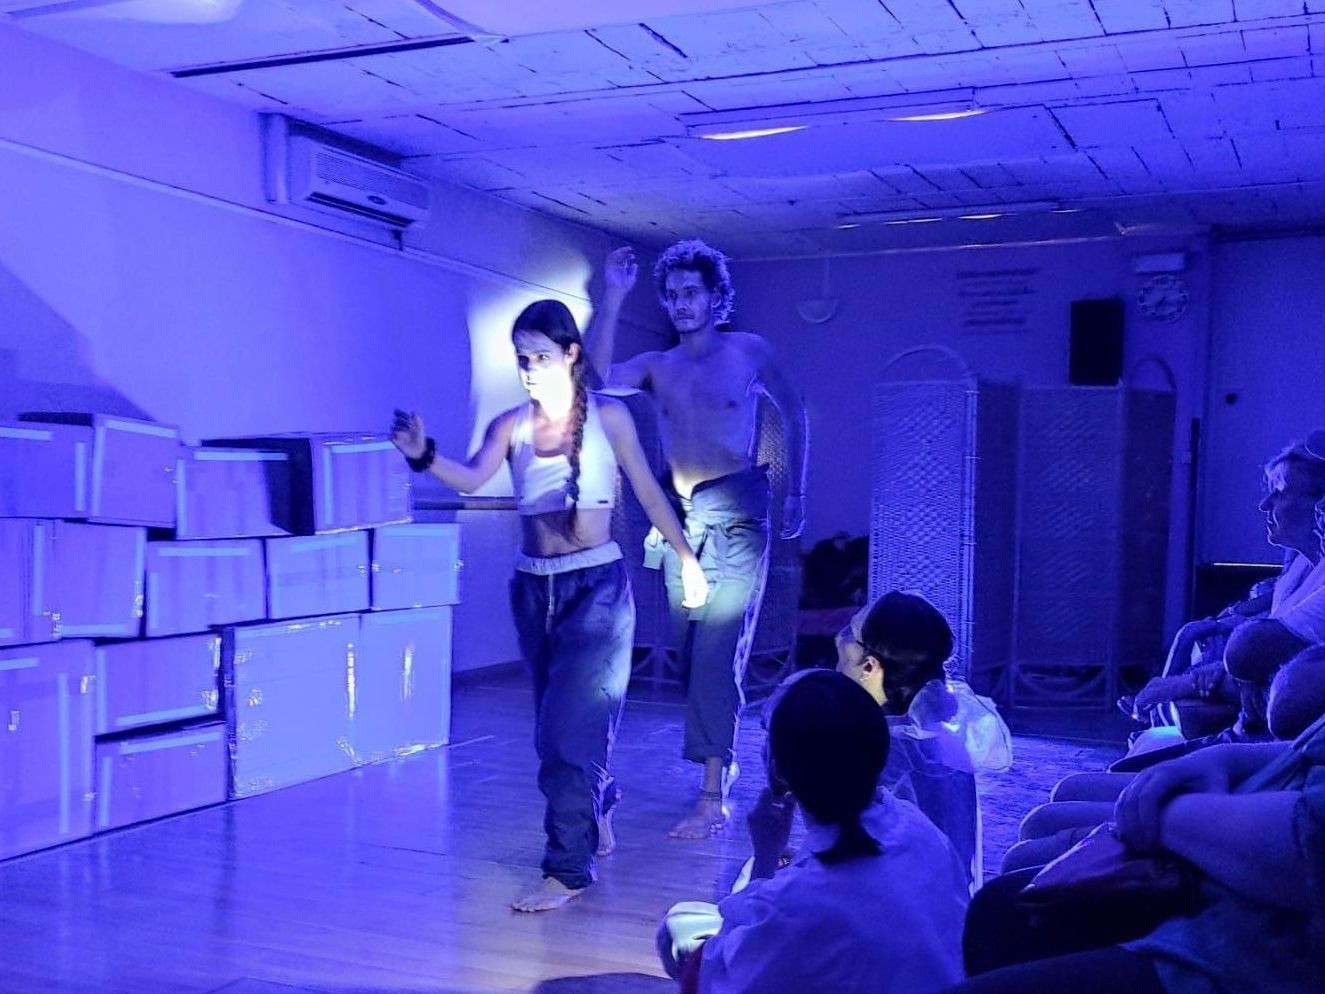 Muestra final del proyecto compañía de teatro físico. Escena con iluminación azul.